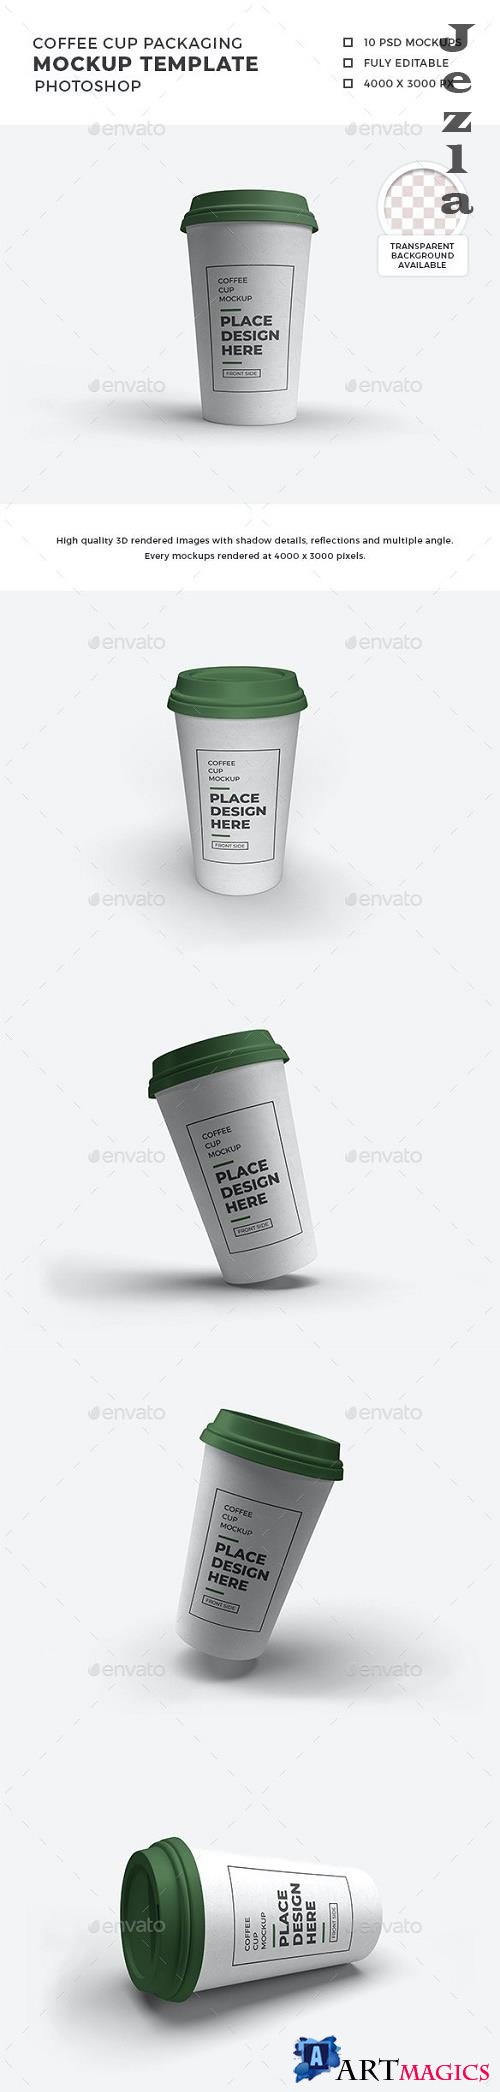 Coffee Cup Packaging Mockup Template Set - 29925155